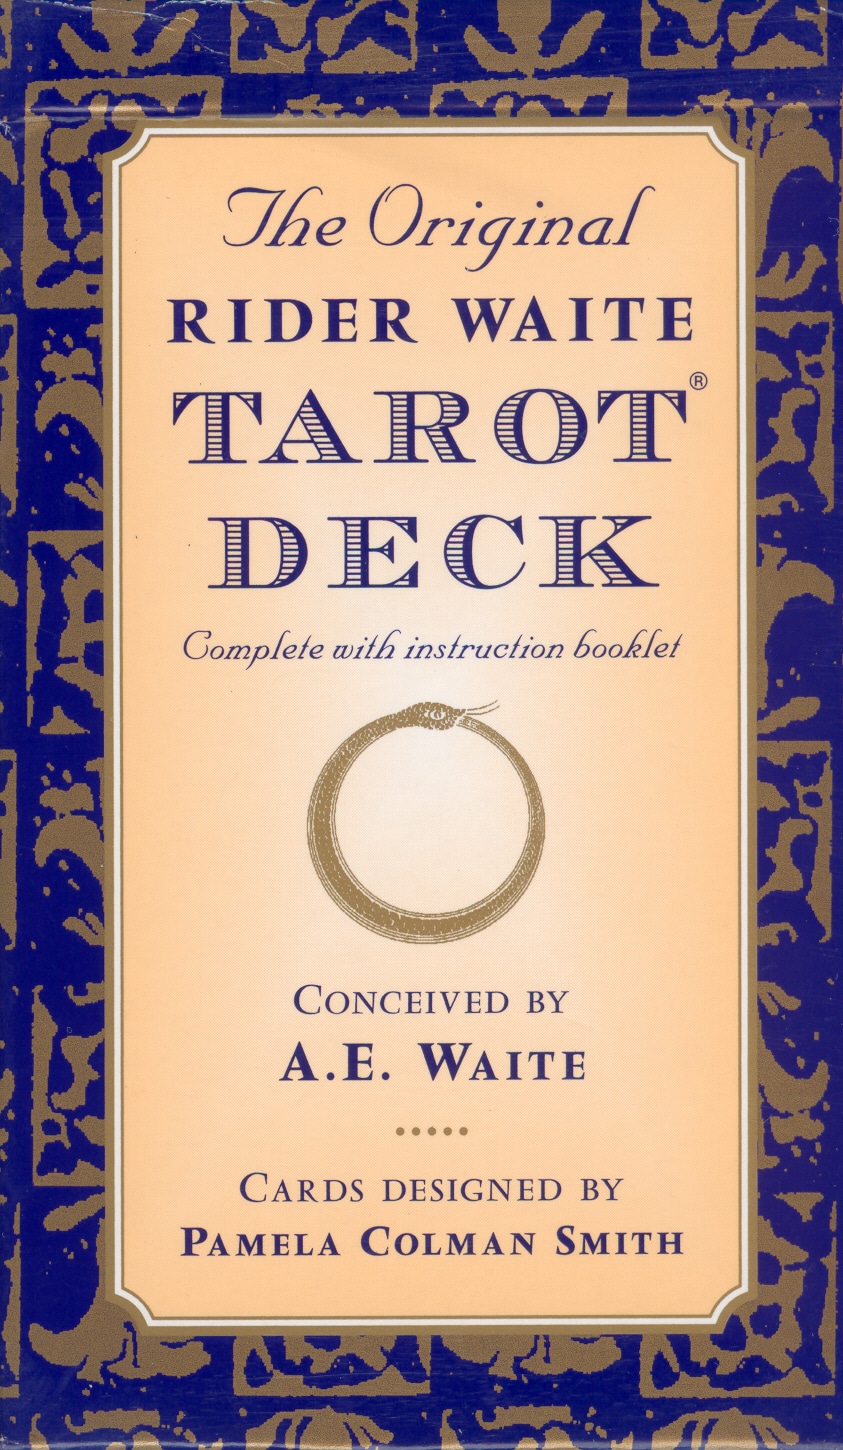 Book “The Original Rider Waite Tarot Deck” by A.E. Waite — June 10, 1999